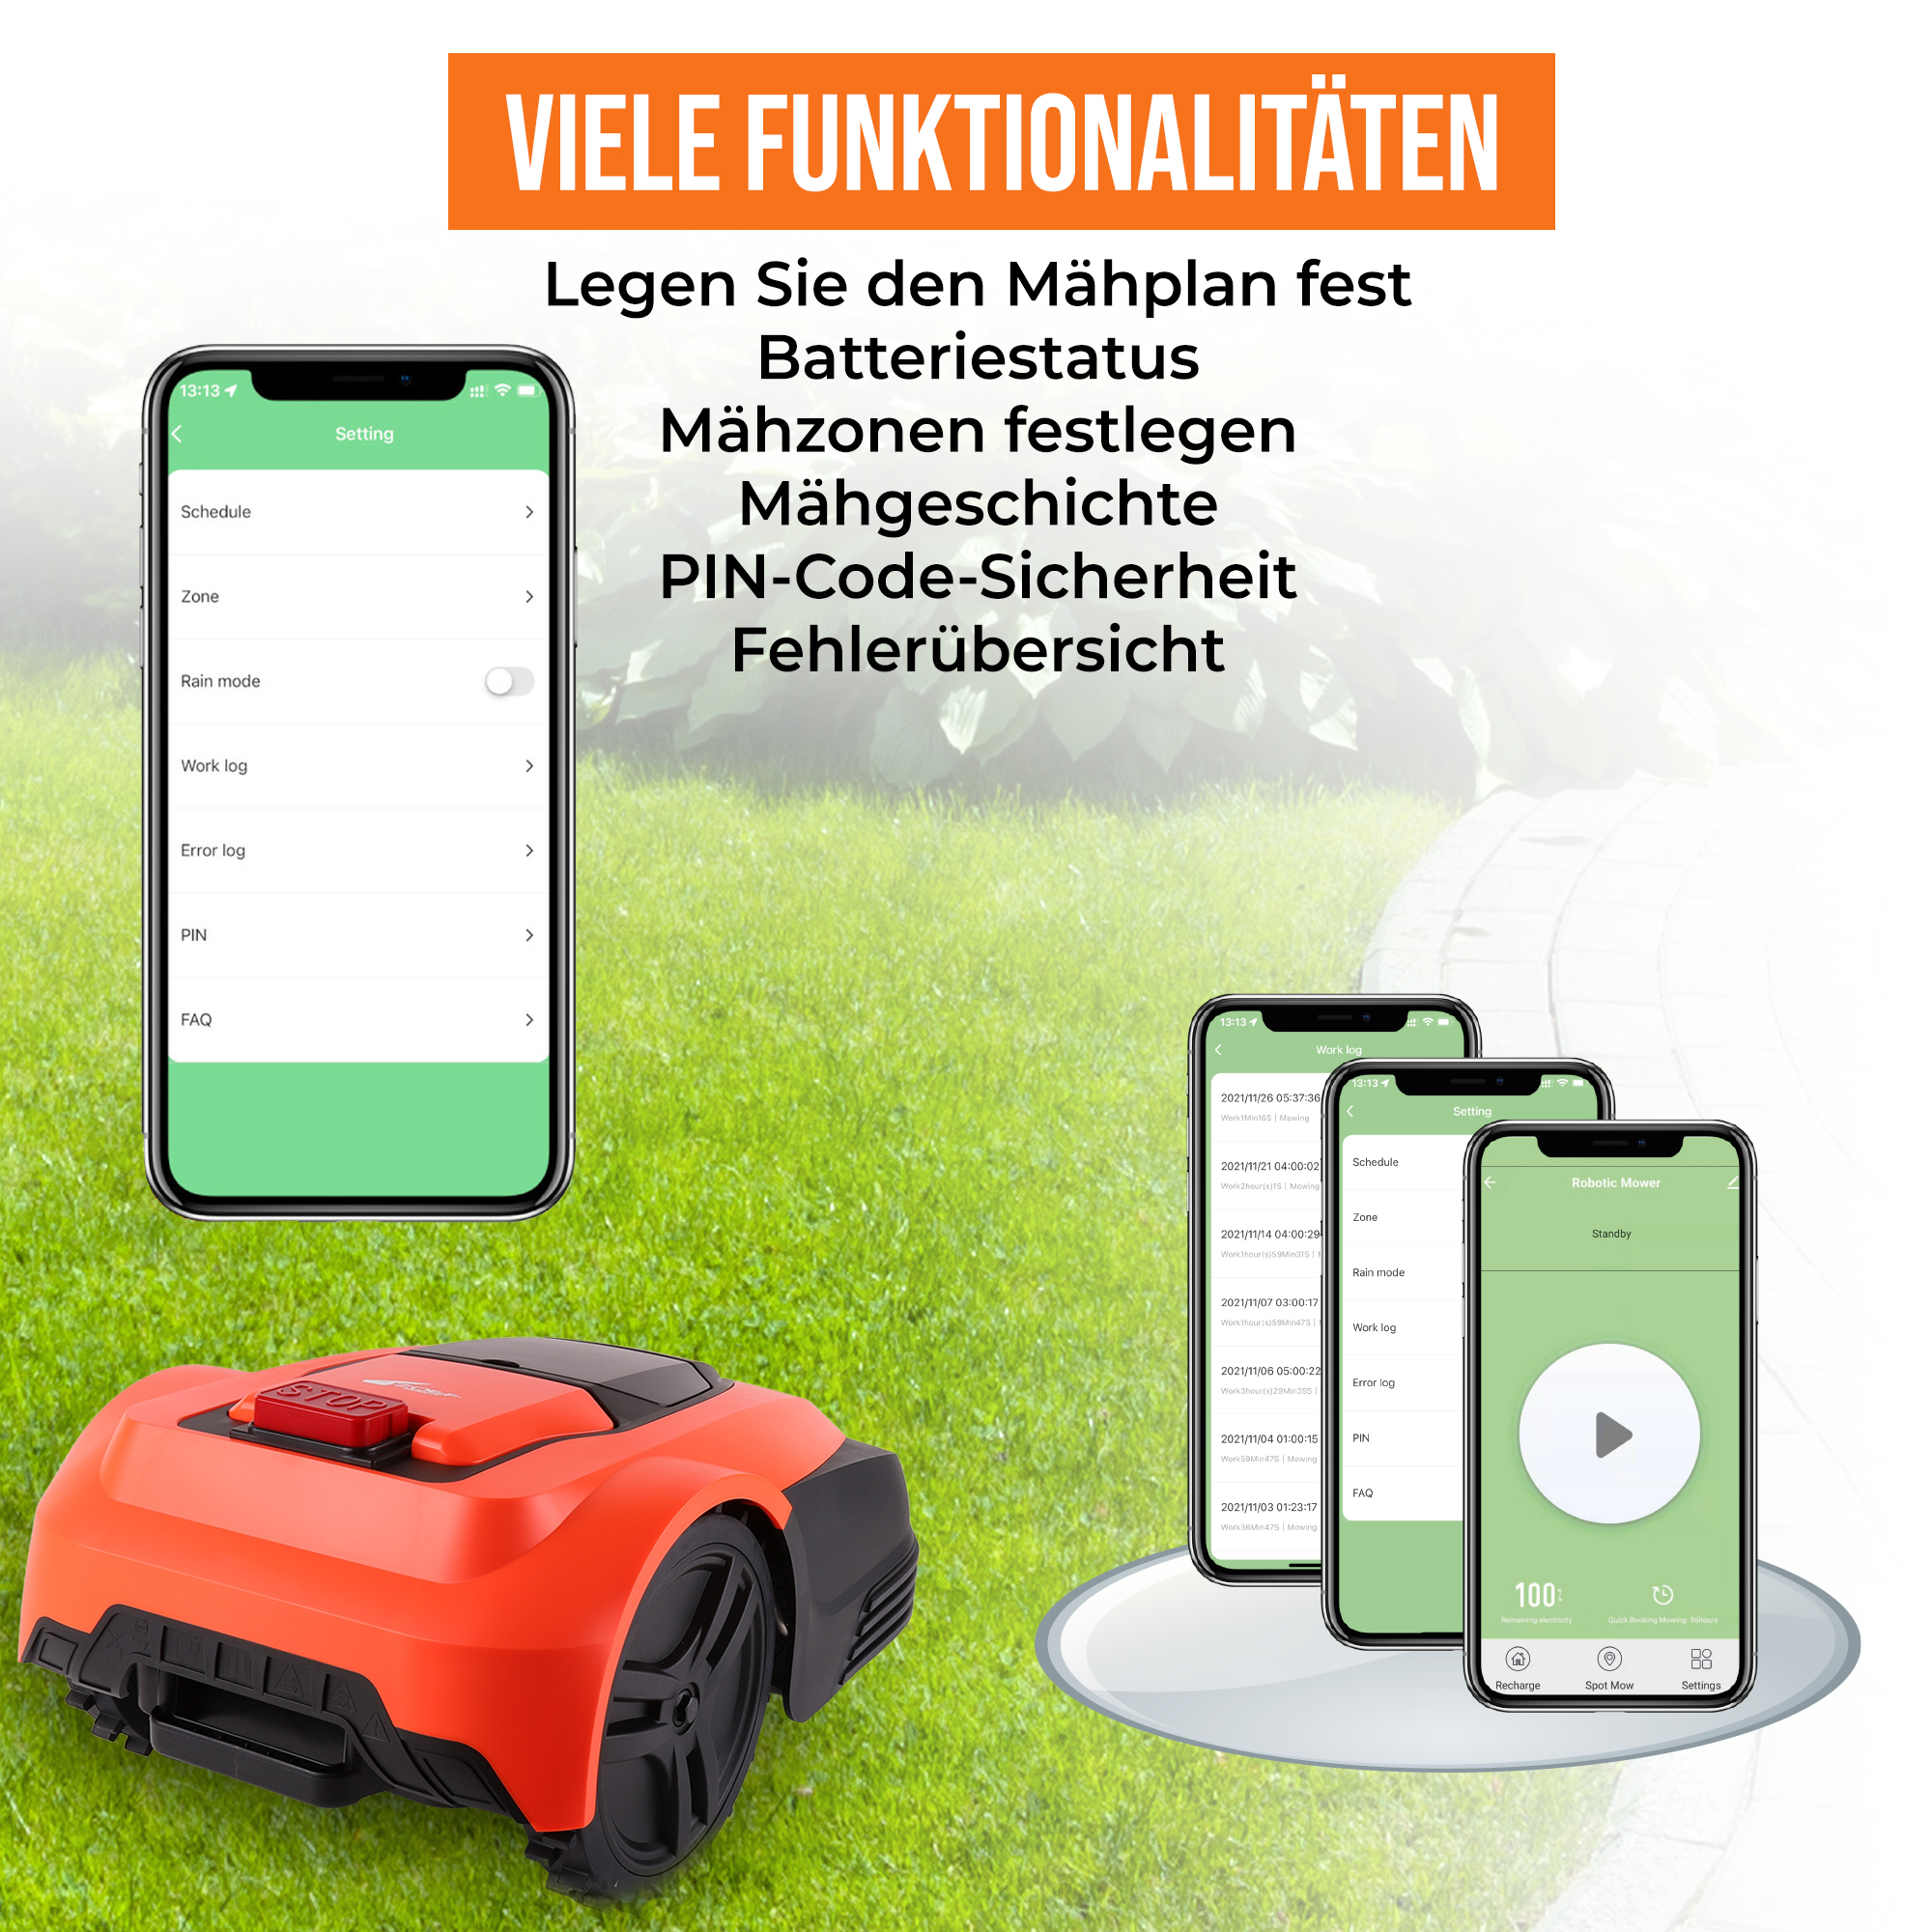 600 Dirk Mähroboter, ROBOT bis mit App, für zu ZOEF m²